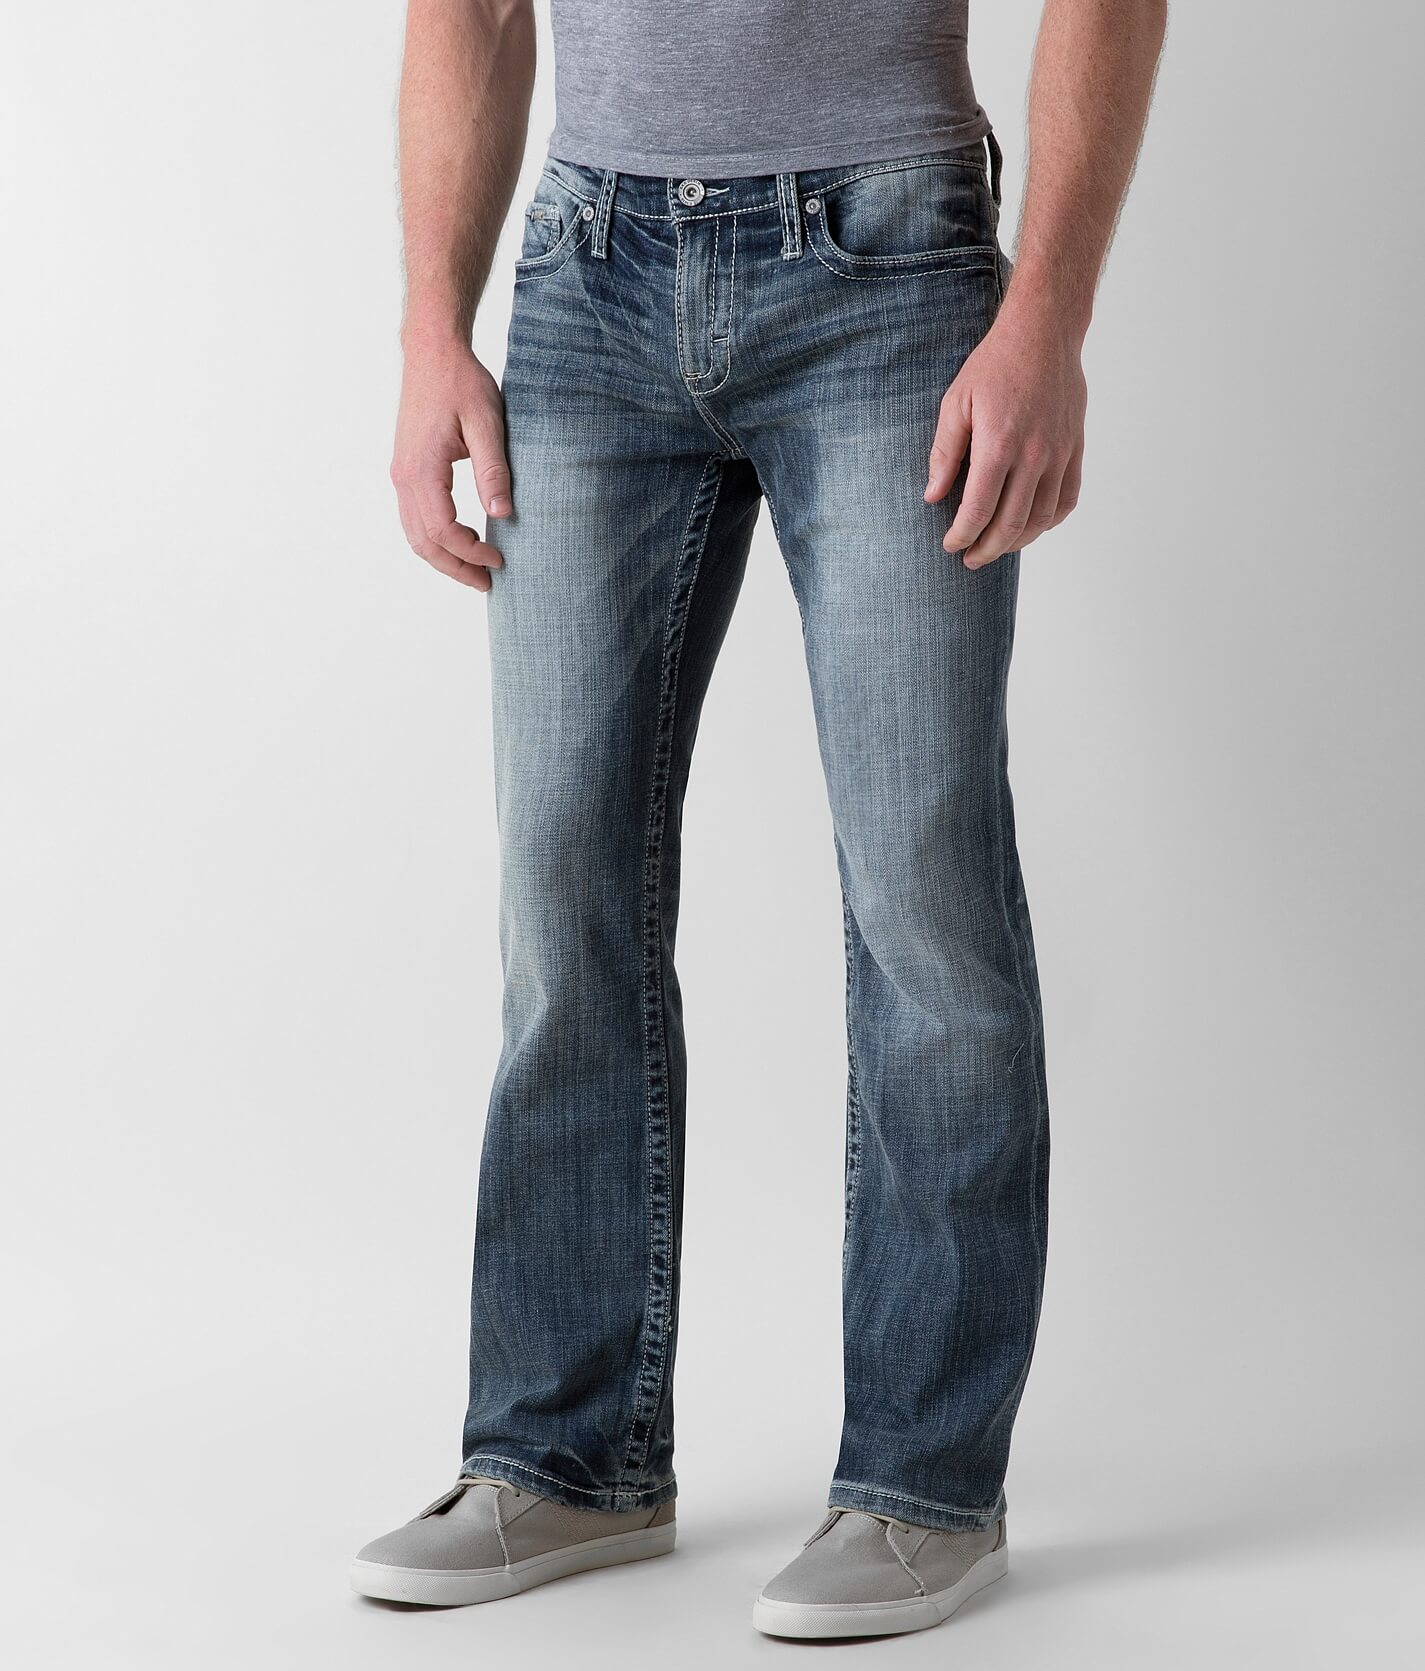 cinch jeans fit